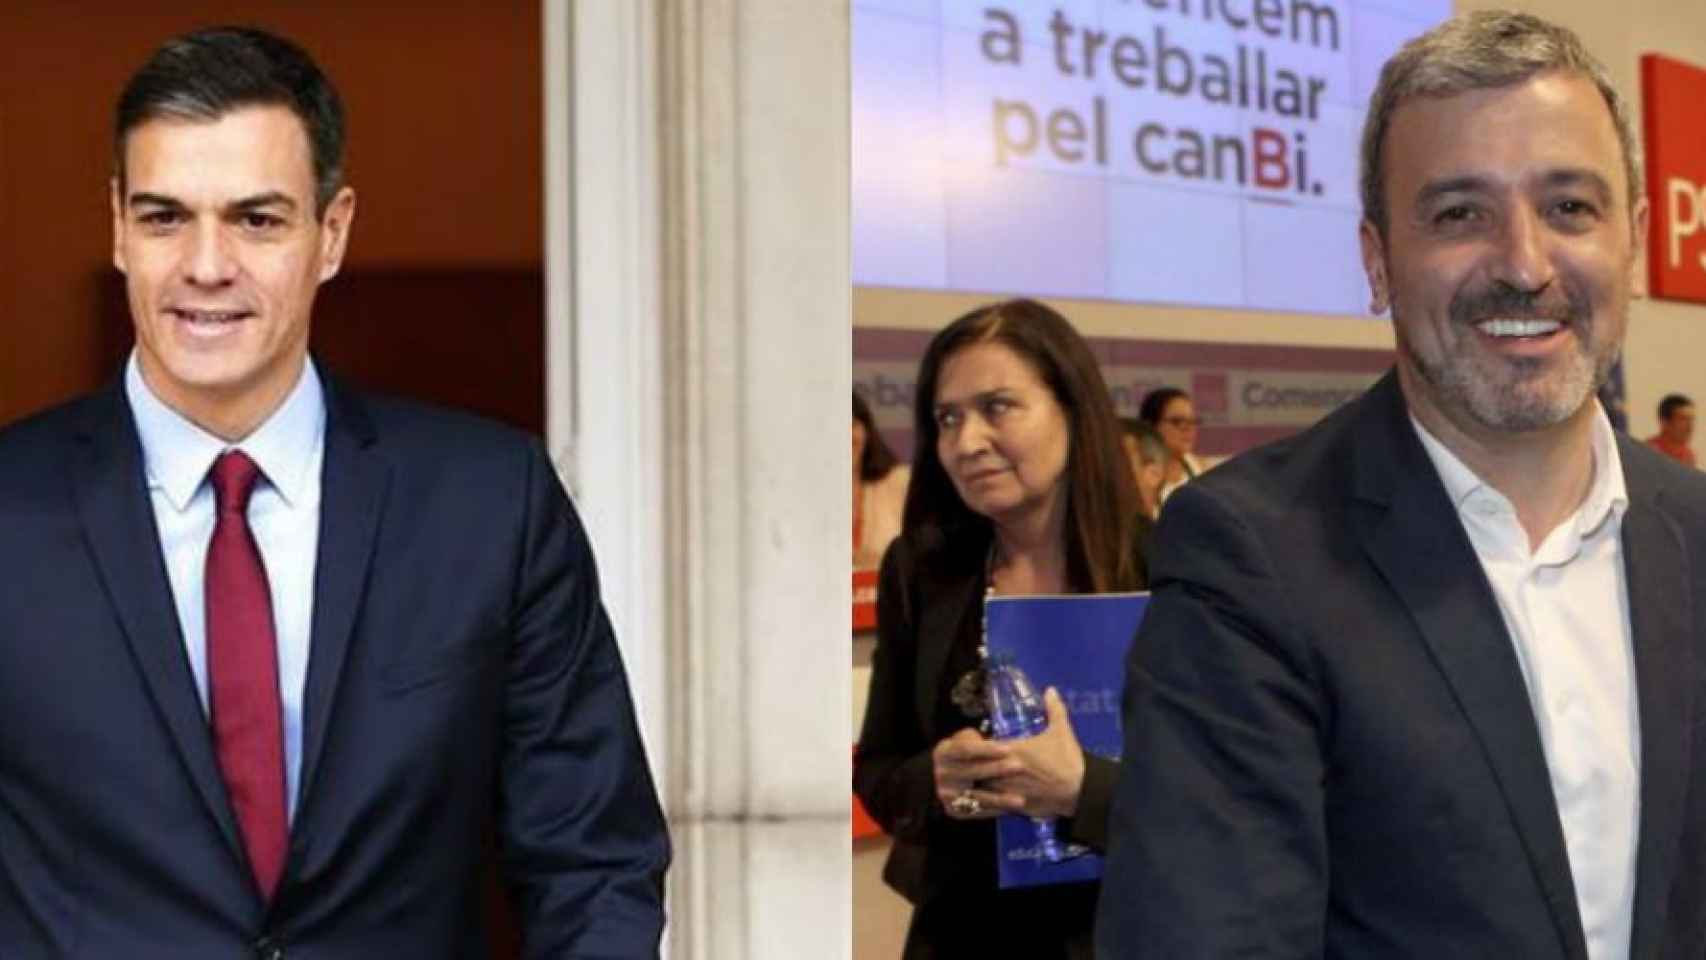 Pedro Sánchez, presidente del gobierno español, y Jaume Collboni, candidato a la alcaldía de Barcelona por el PSC